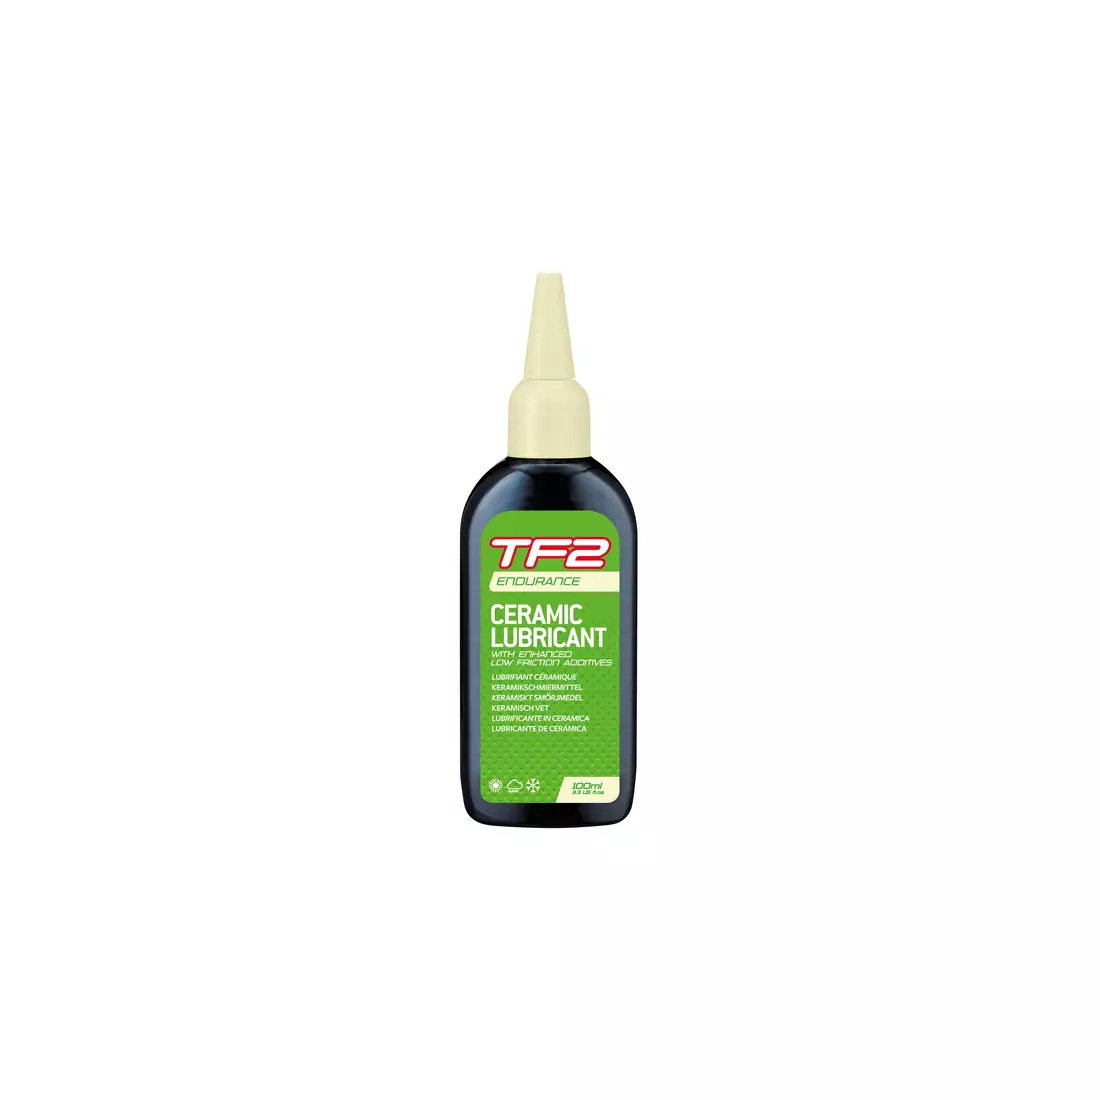 WELDTITE tf2 vytrvalostní keramický mazací olej na řetězy (suché a mokré podmínky) 100ml WLD-03065